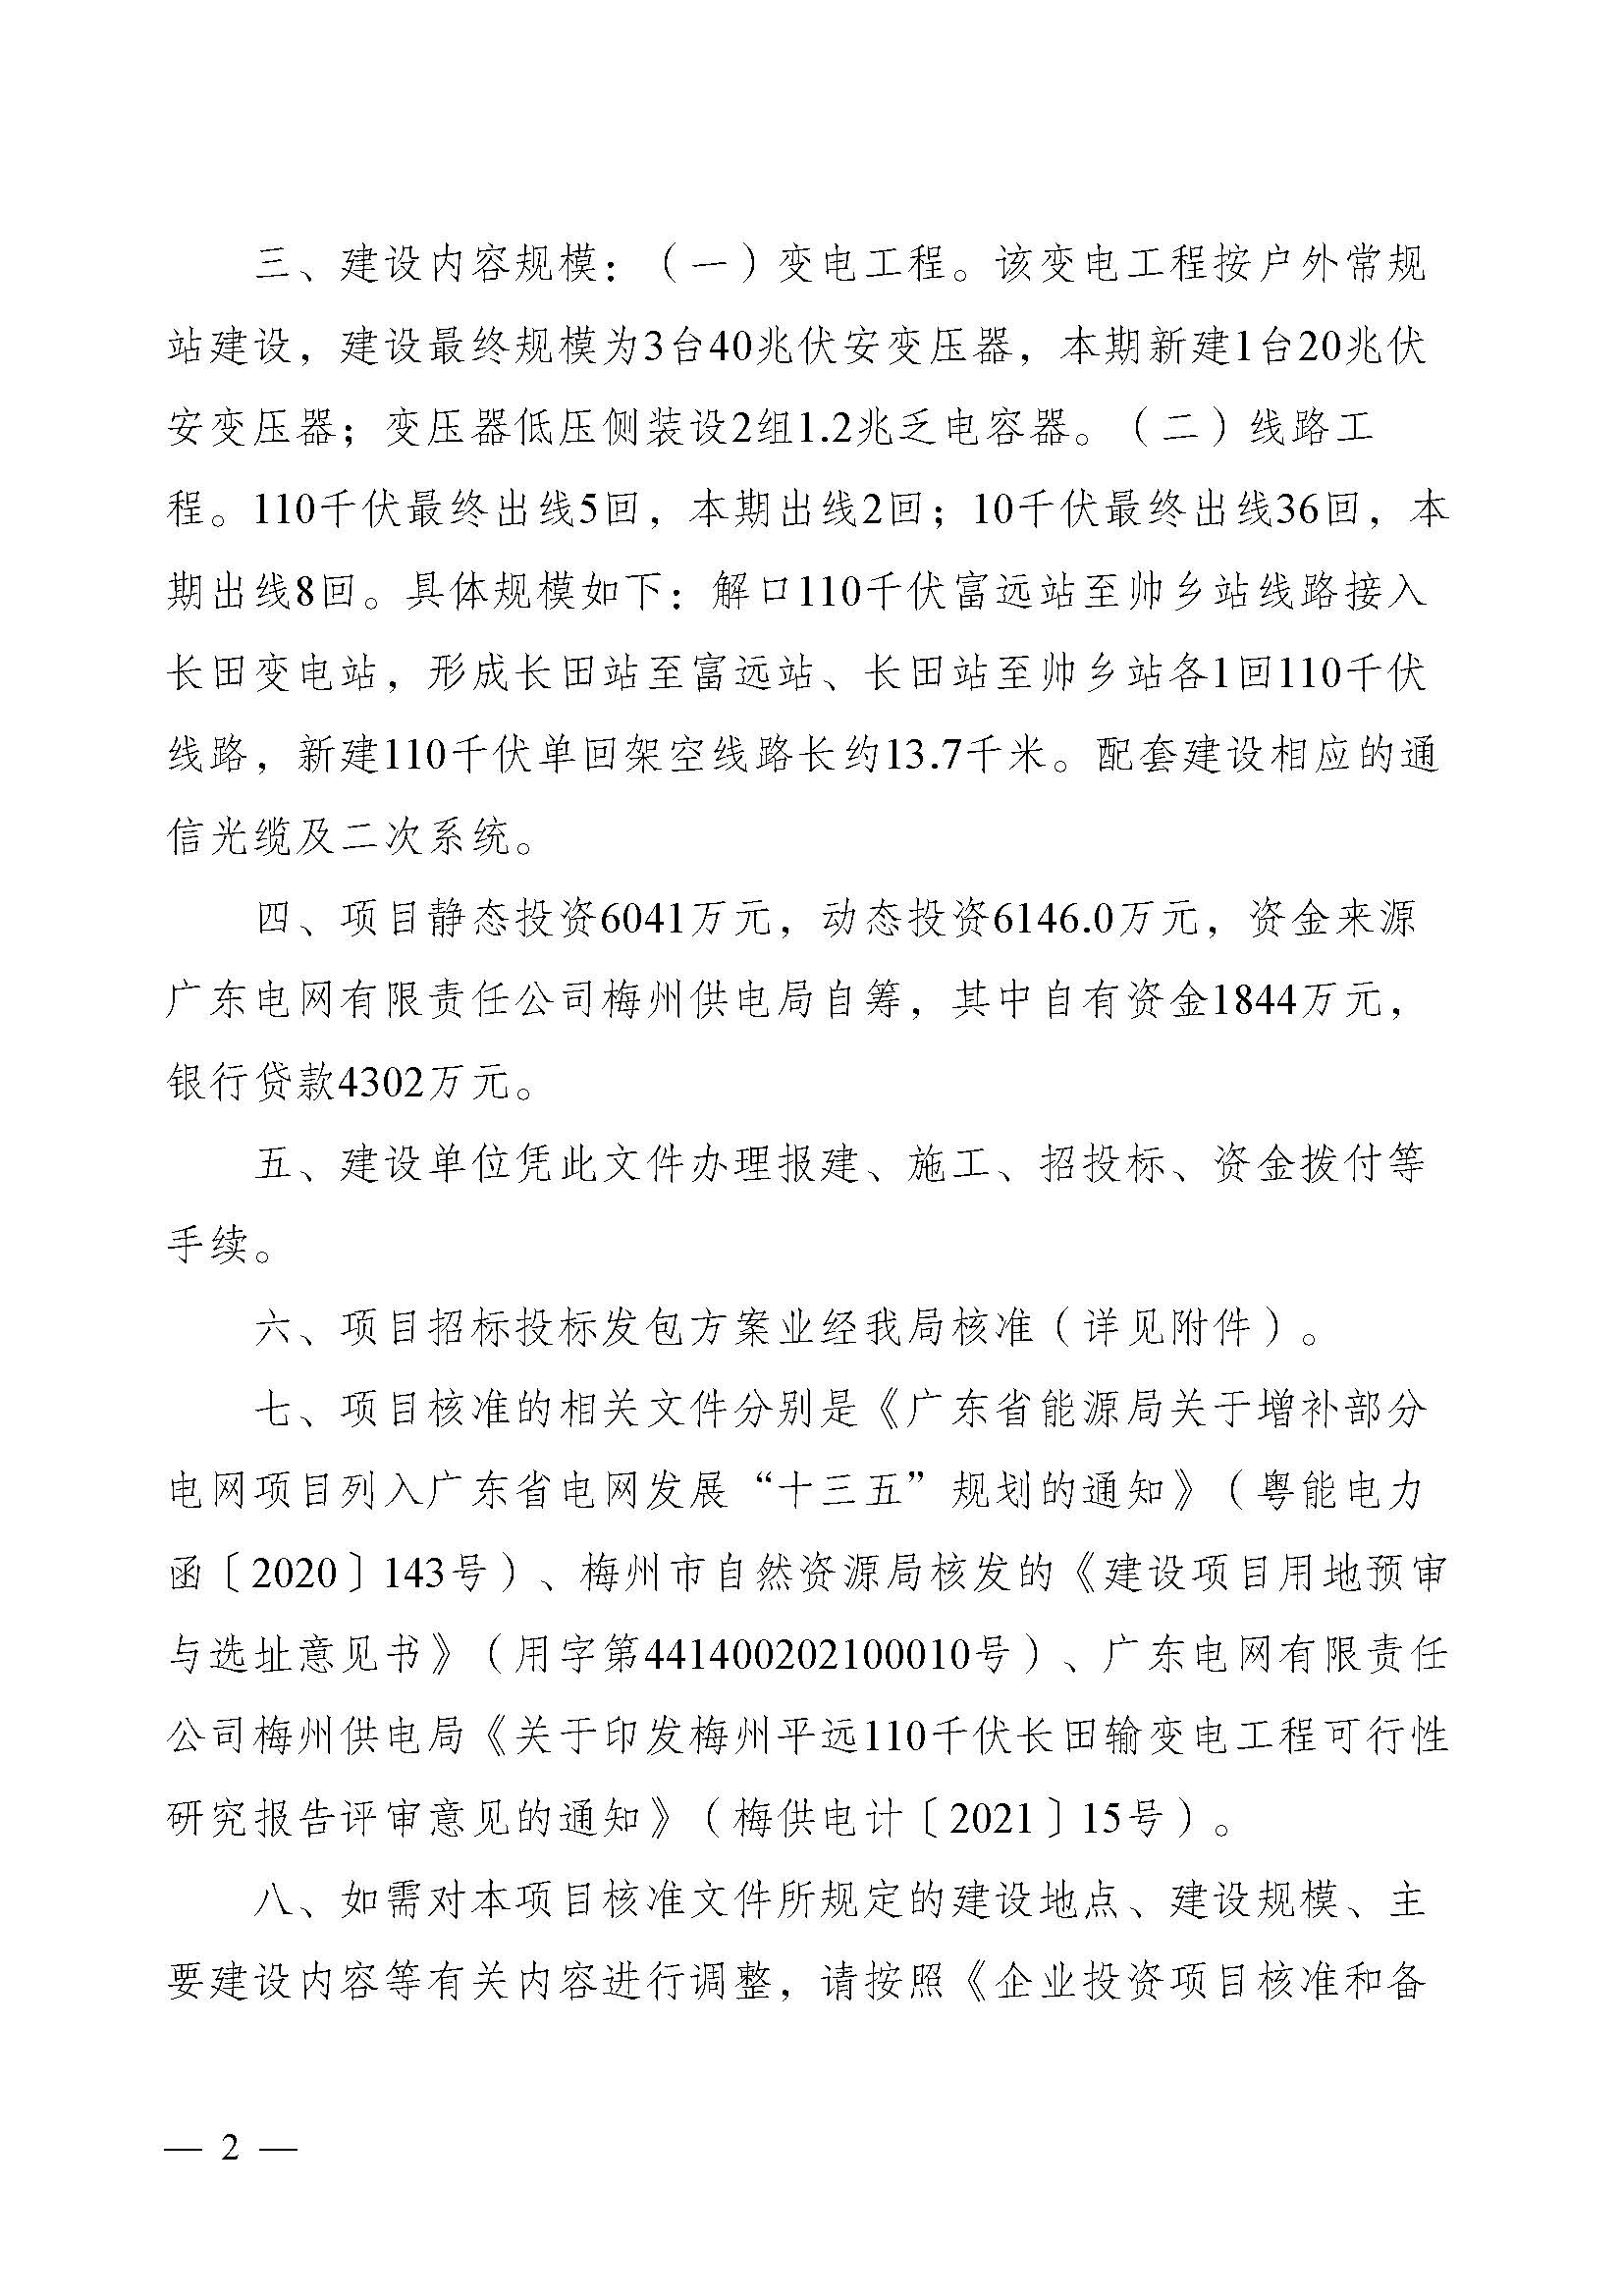 梅州市发展和改革局关于梅州平远110千伏长田输变电工程项目核准的批复_页面_2.jpg